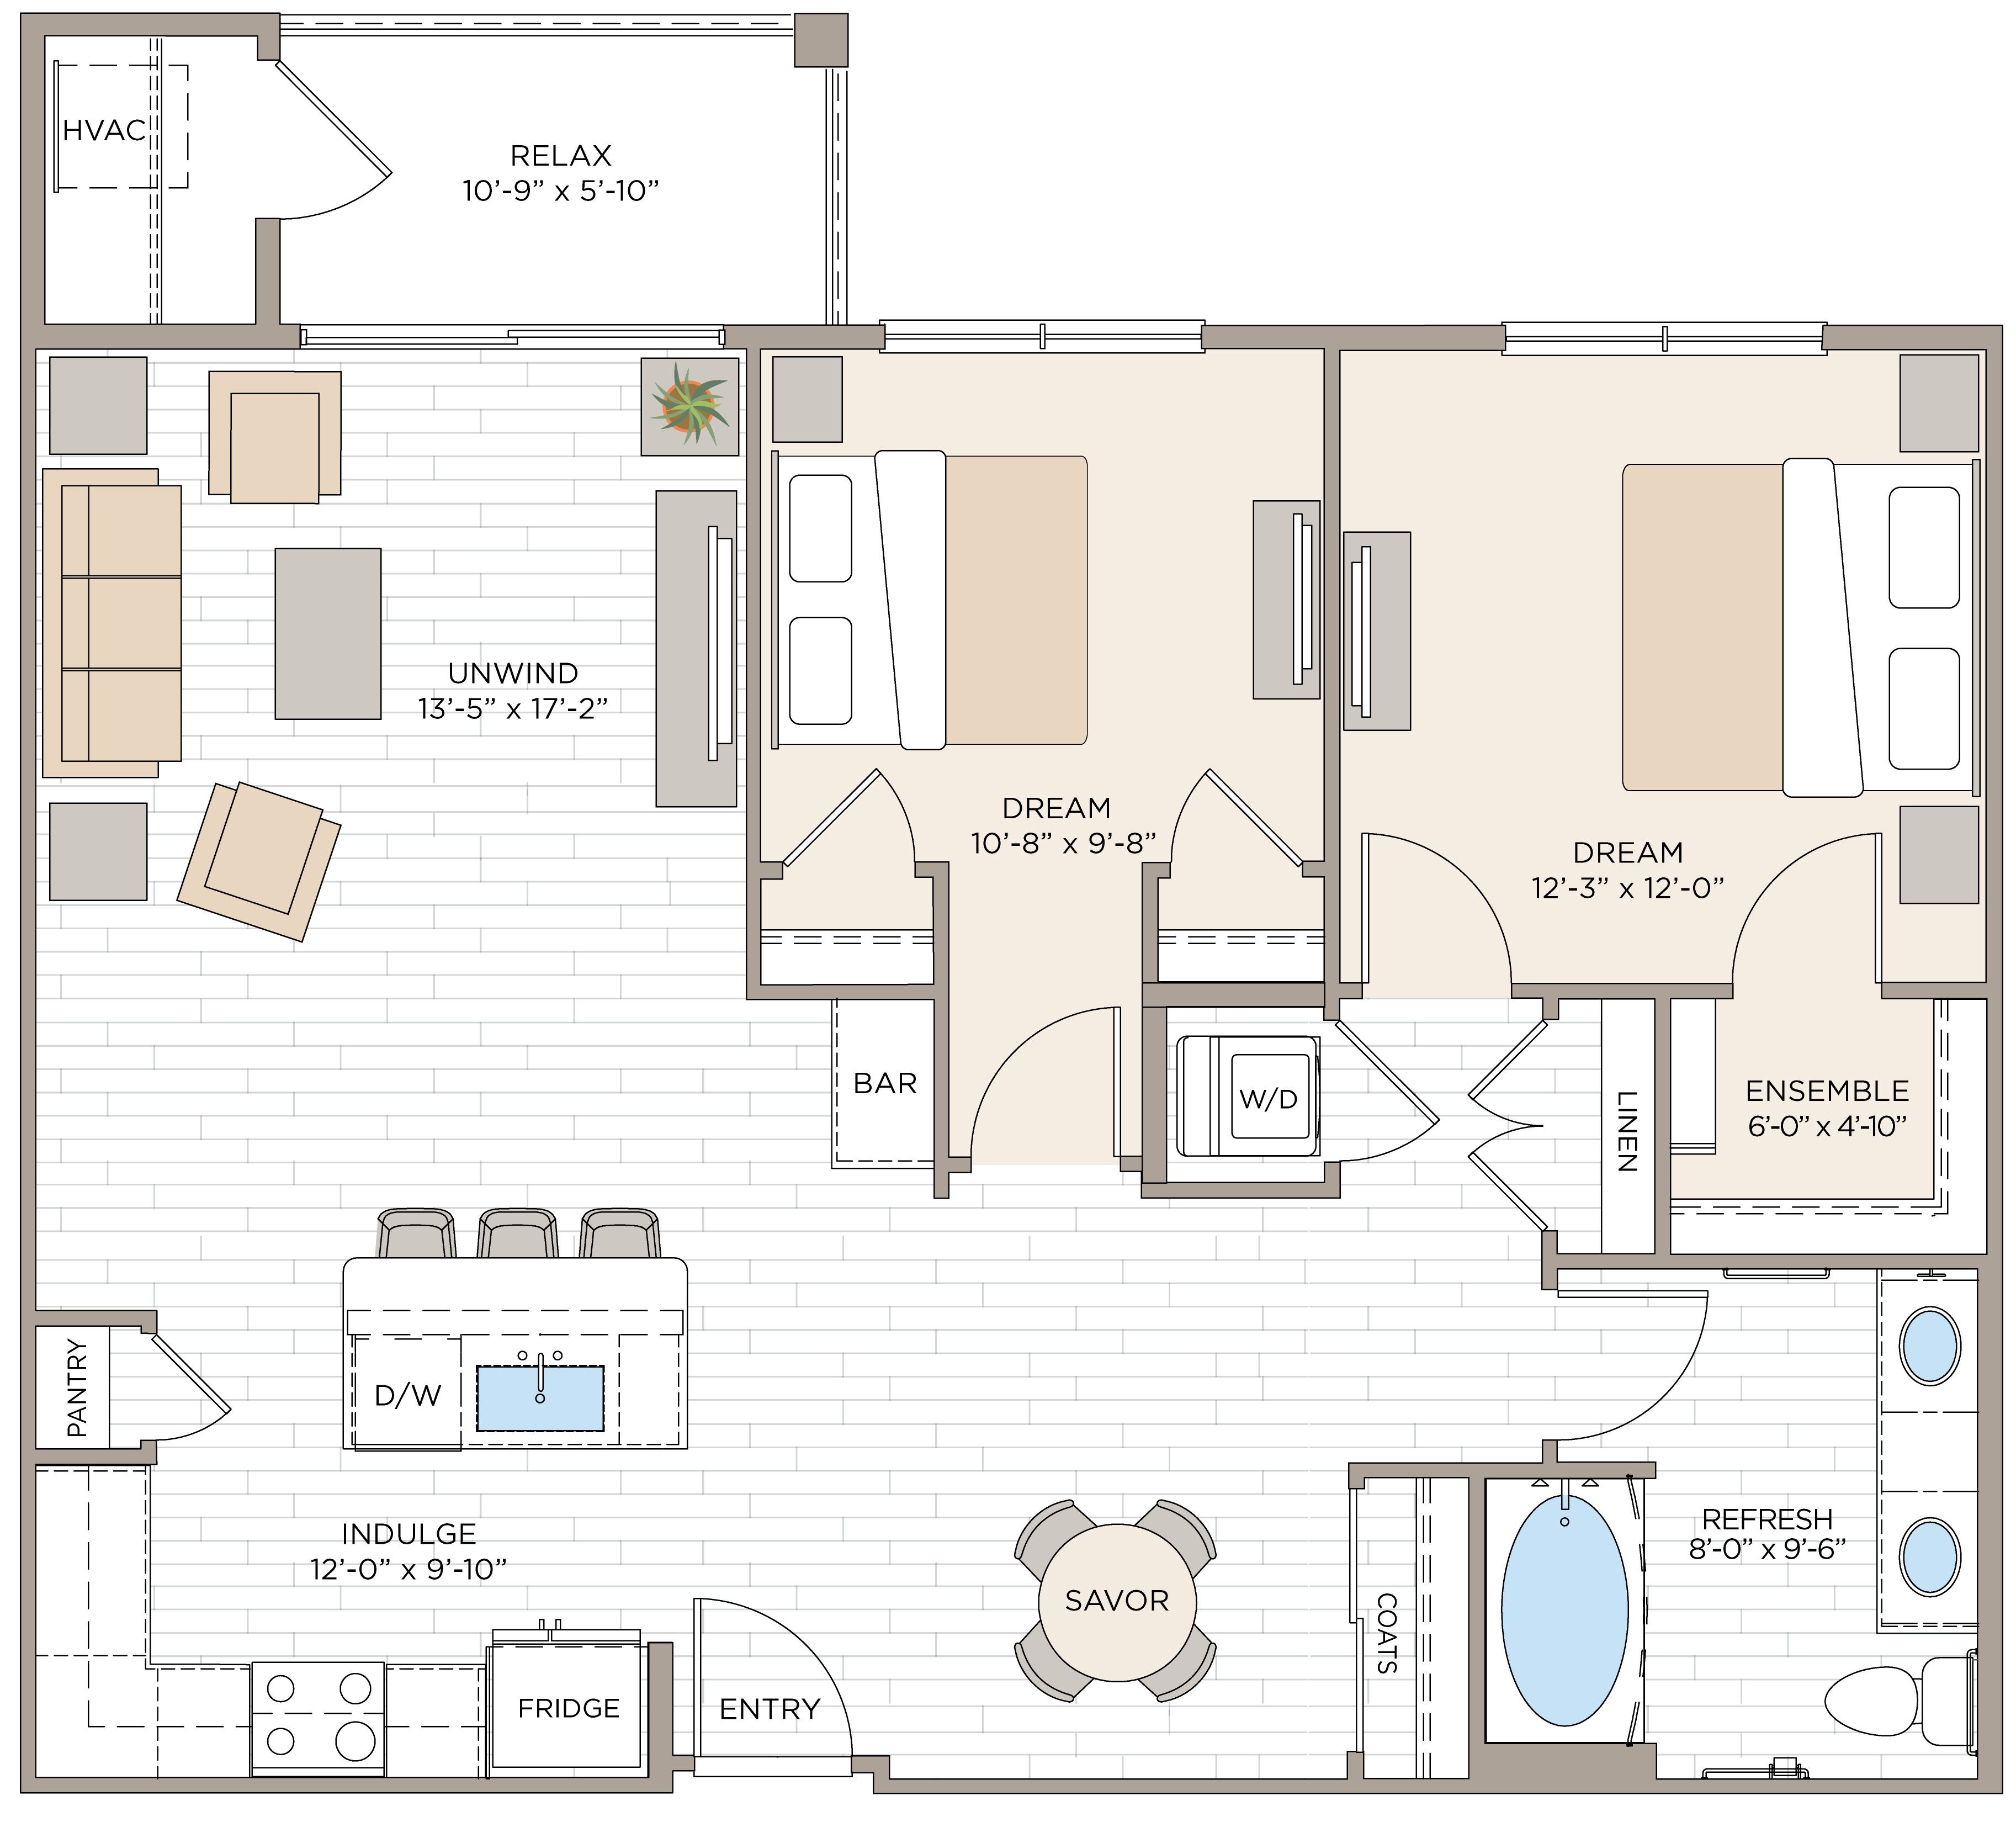 Floorplan for Apartment #14325, 2 bedroom unit at Halstead Maynard Crossing